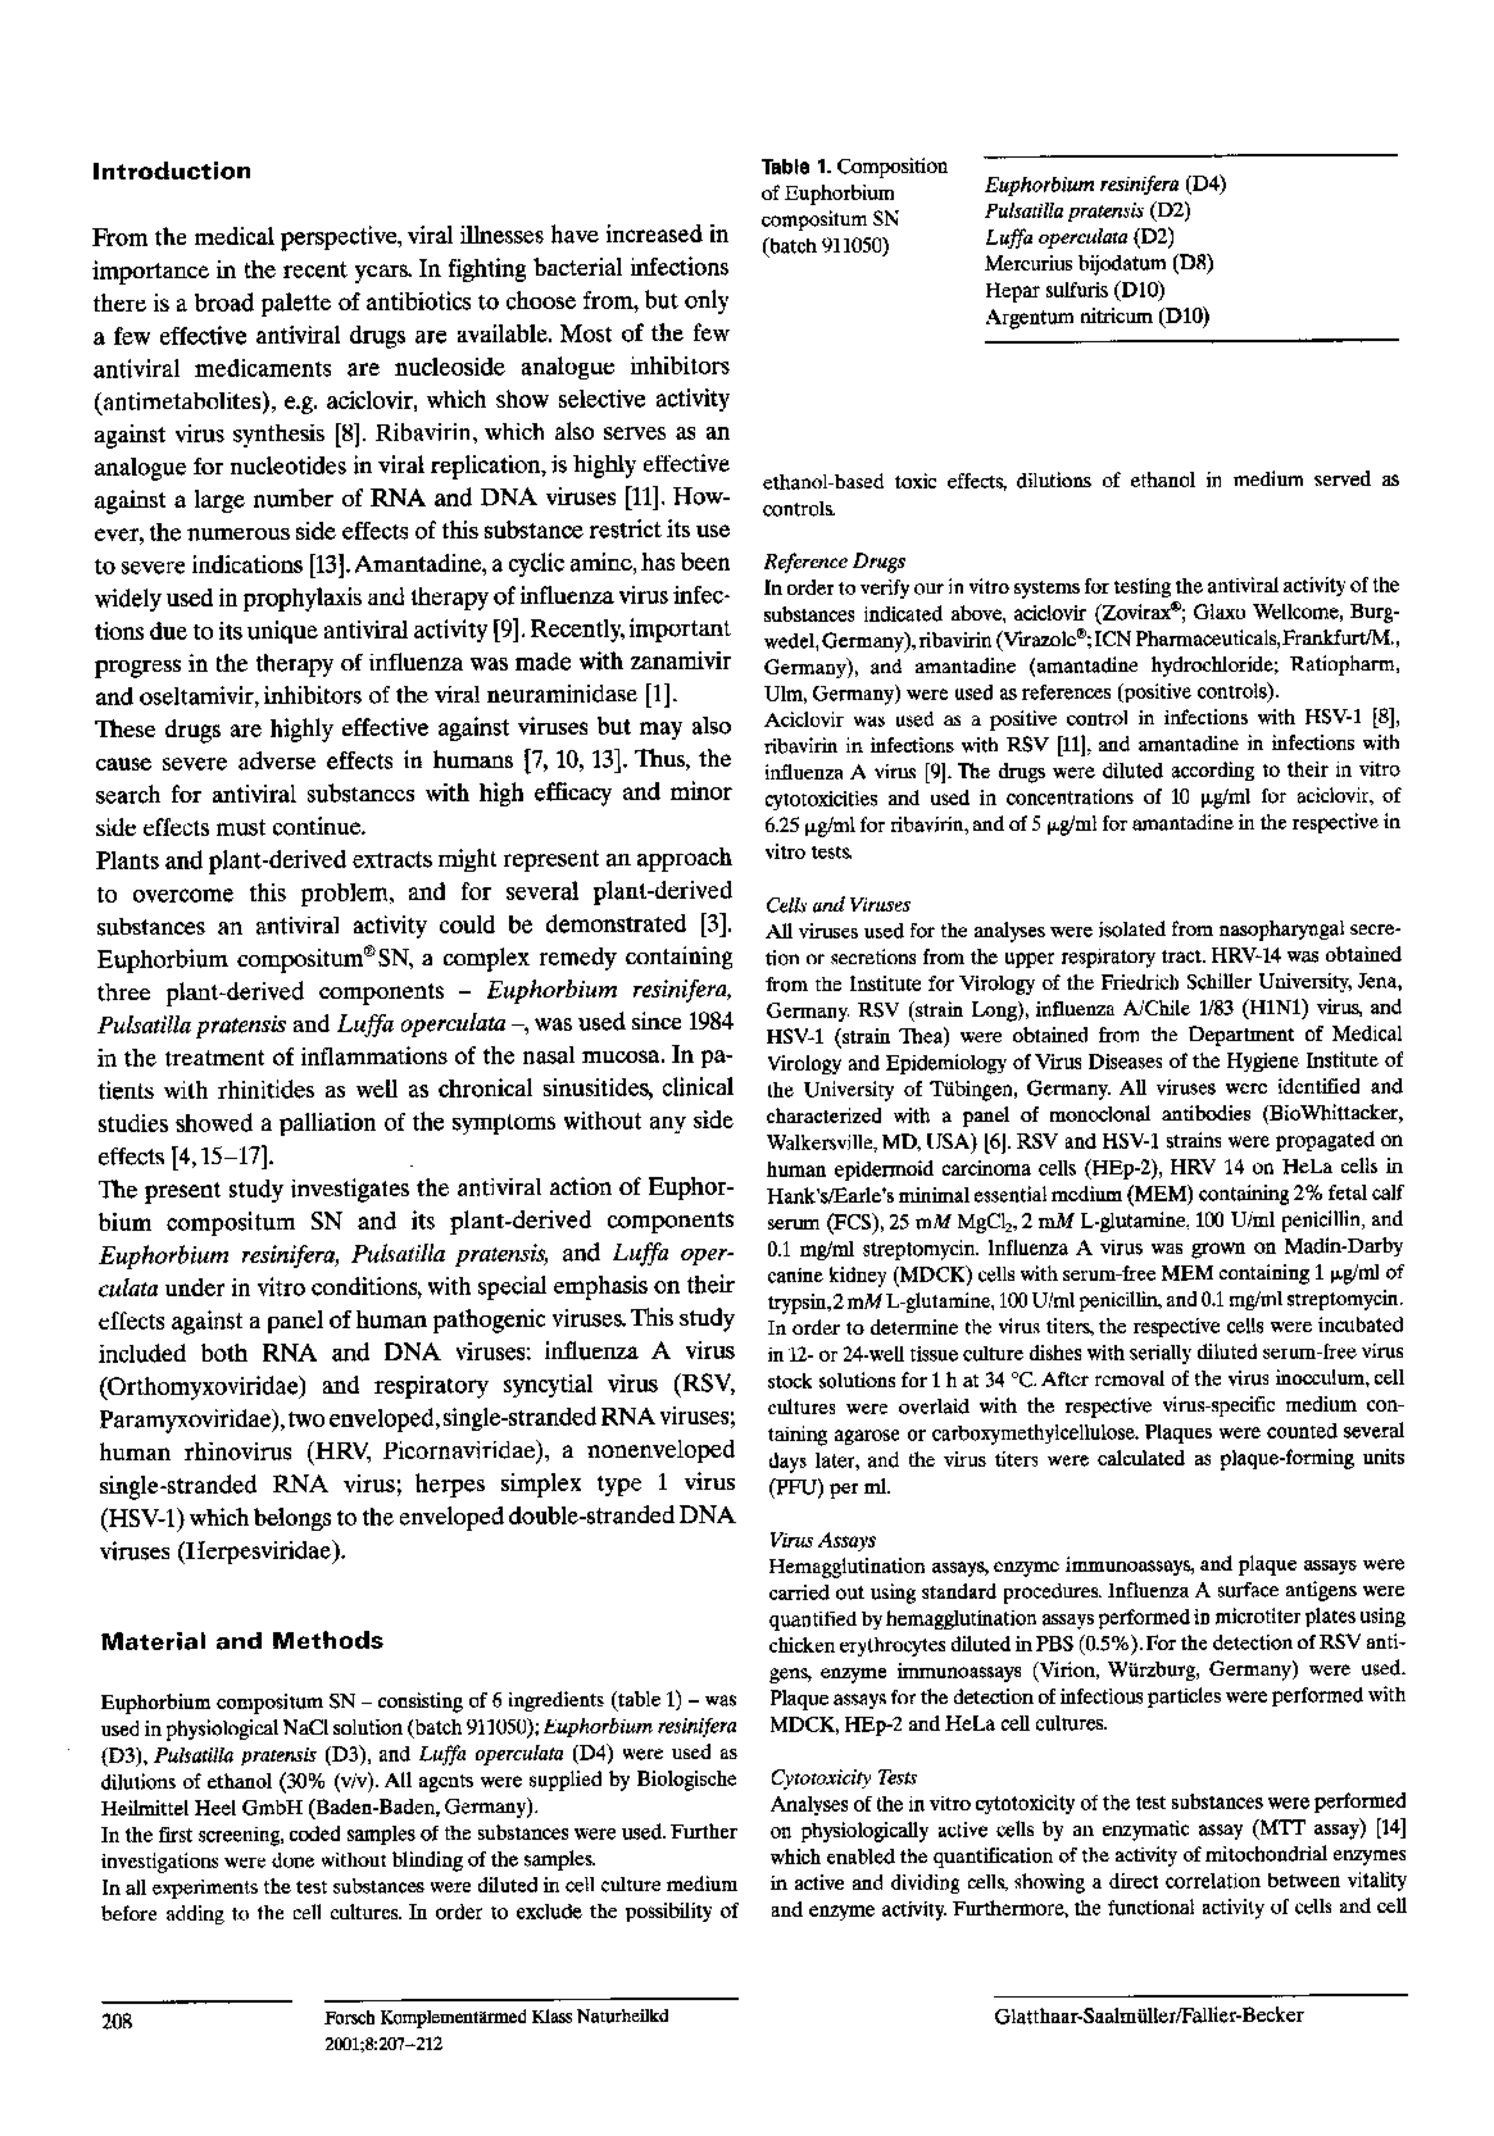 Euphorbium Compositum Tabletten afbeelding van document #2, productonderzoek